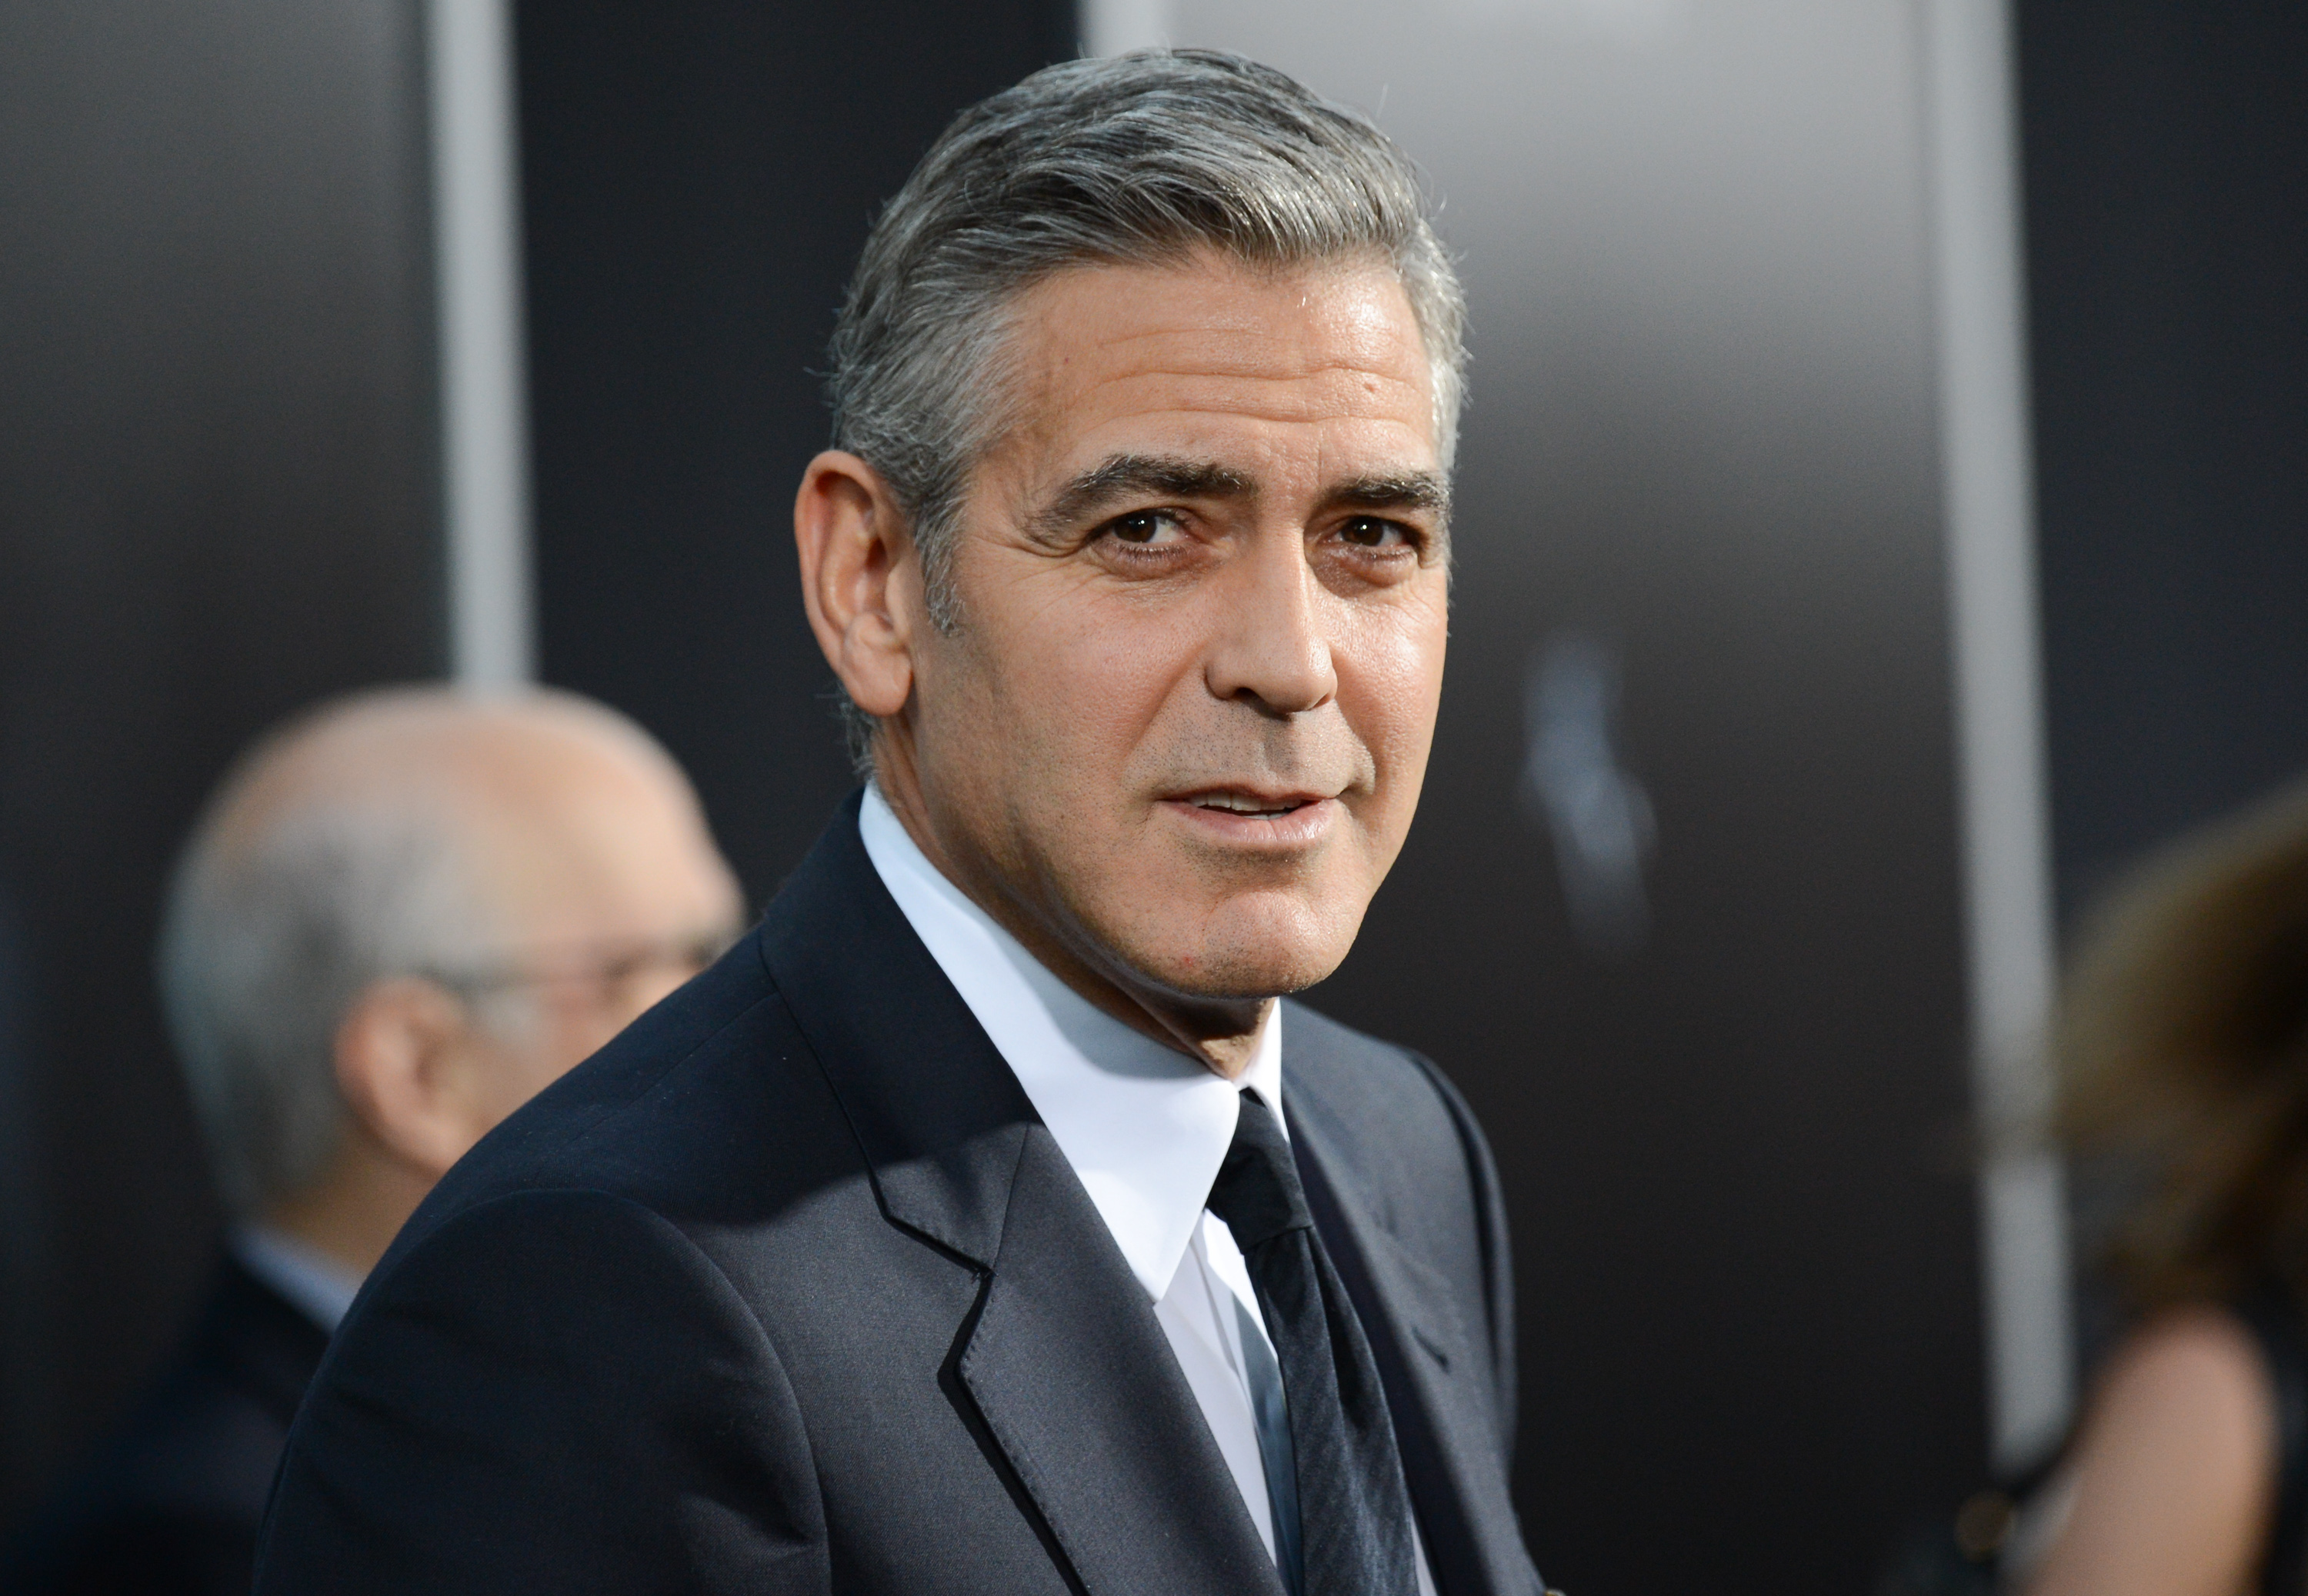 Clooney entra a polémica Trump-NFL; escribe poema en respaldo a protestas